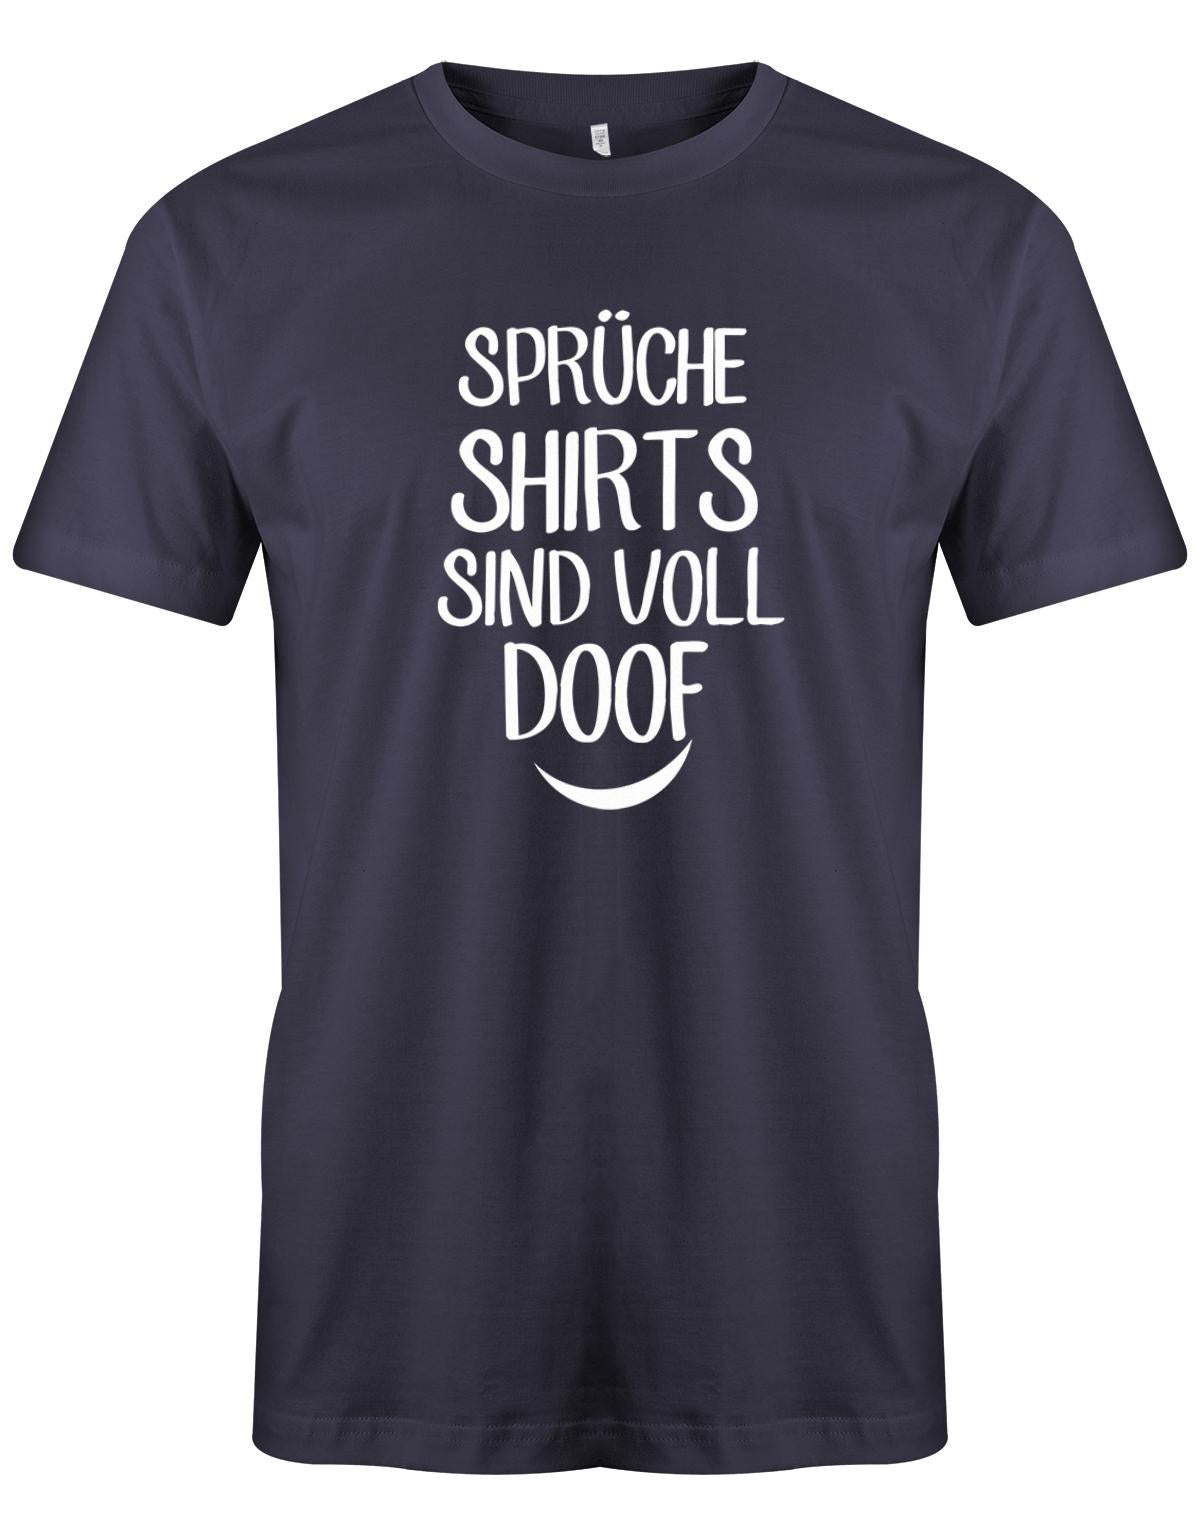 Spr-che-shirts-sind-voll-doof-Herren-Shirt-Navy